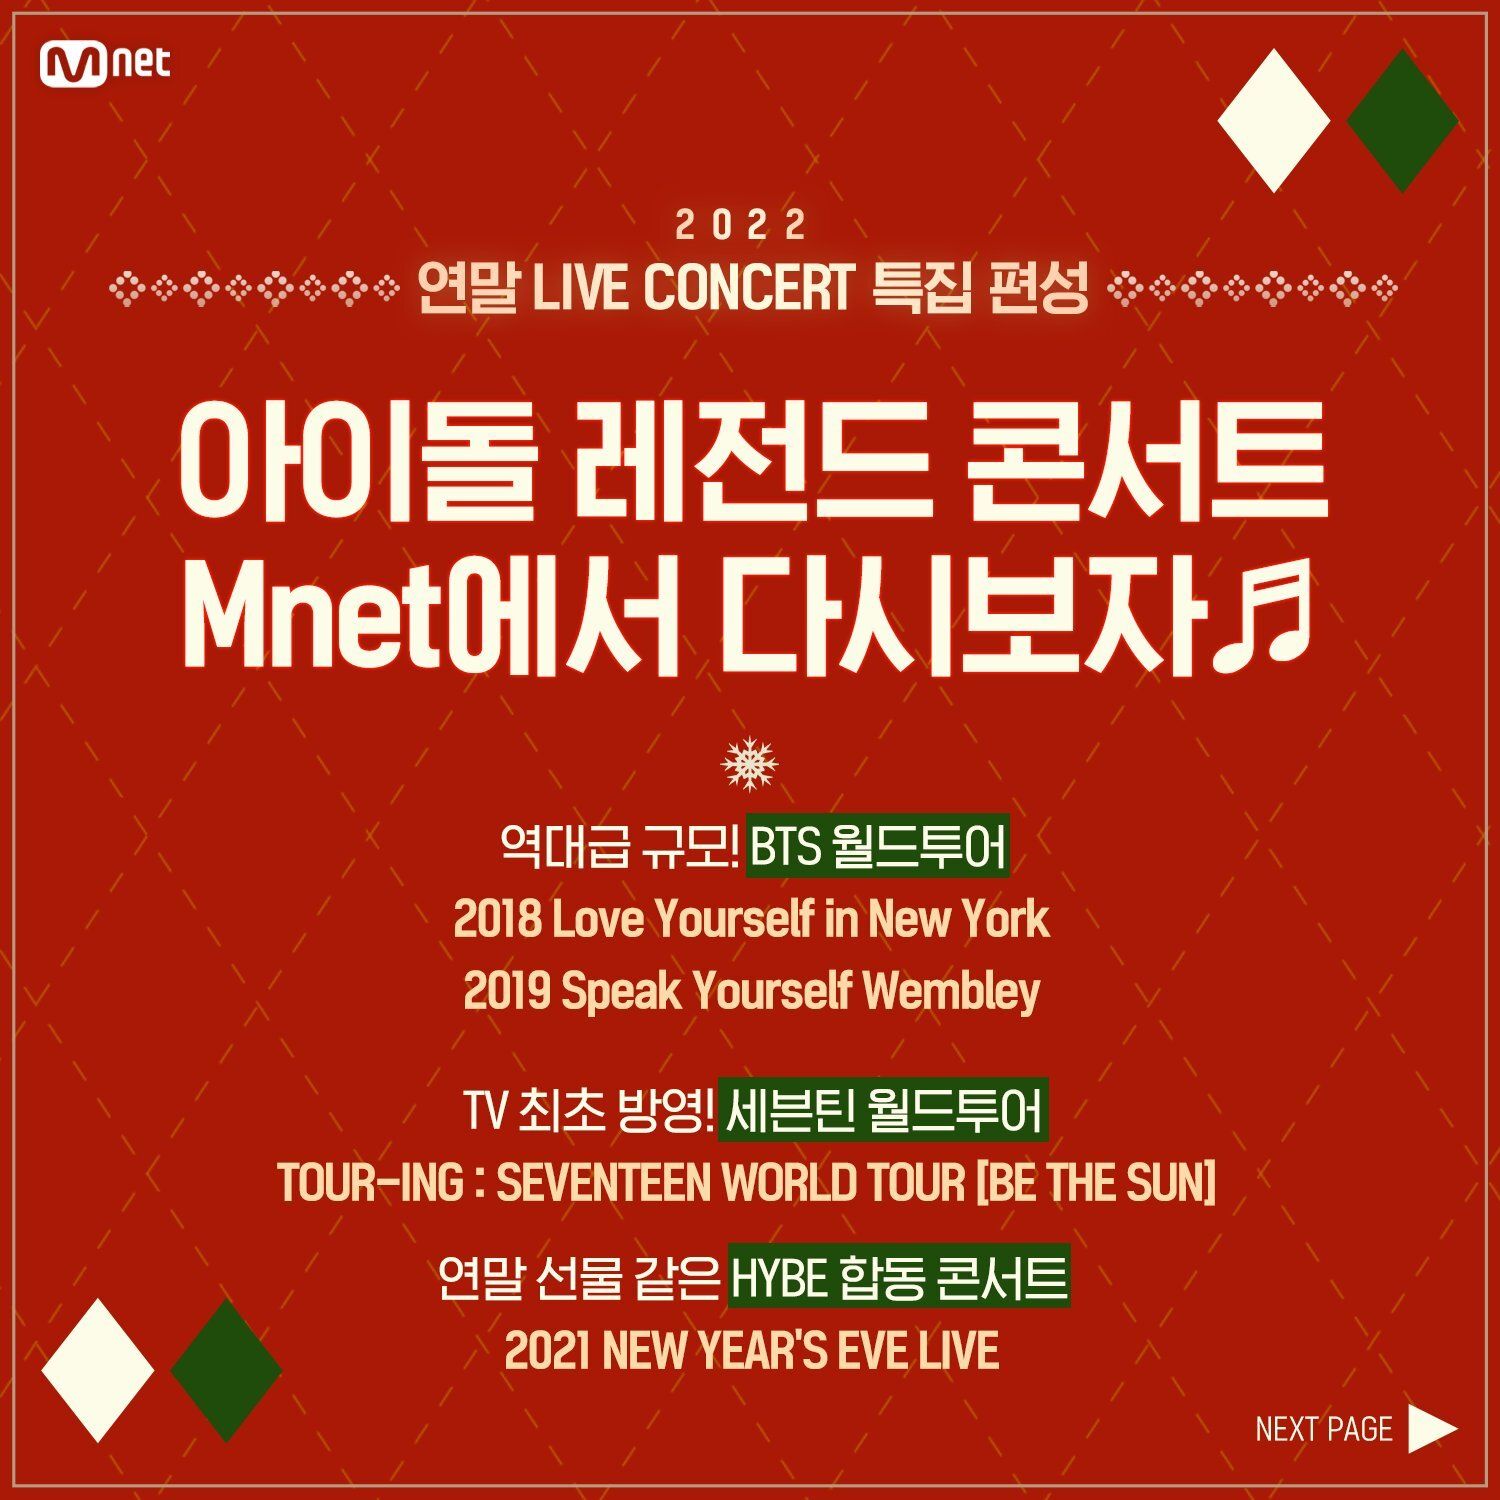 Mnet tayangkan konser BTS dan SEVENTEEN di akhir 2022